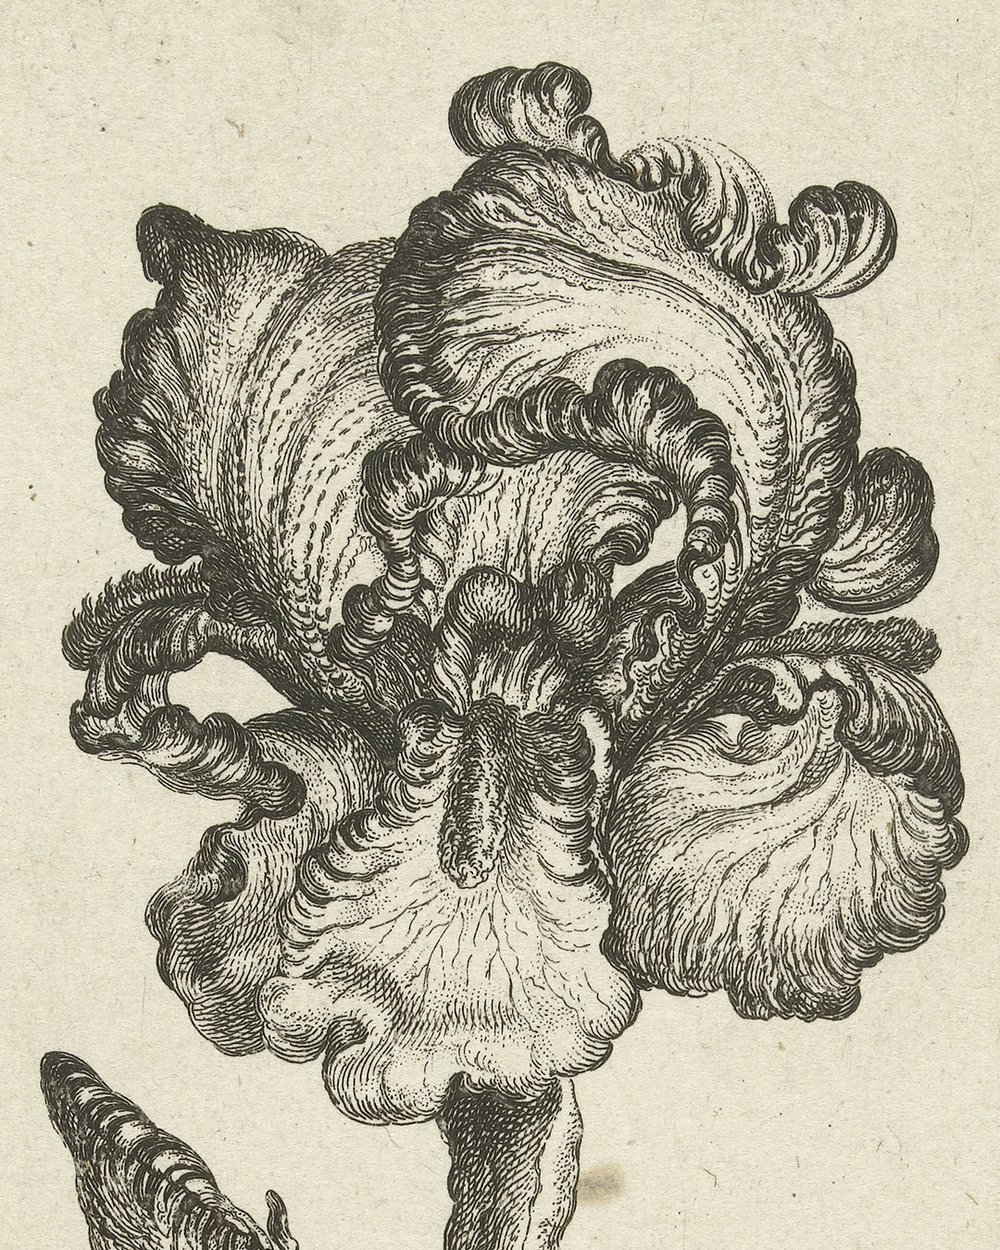 ''Iris'' (1630 - 1690)